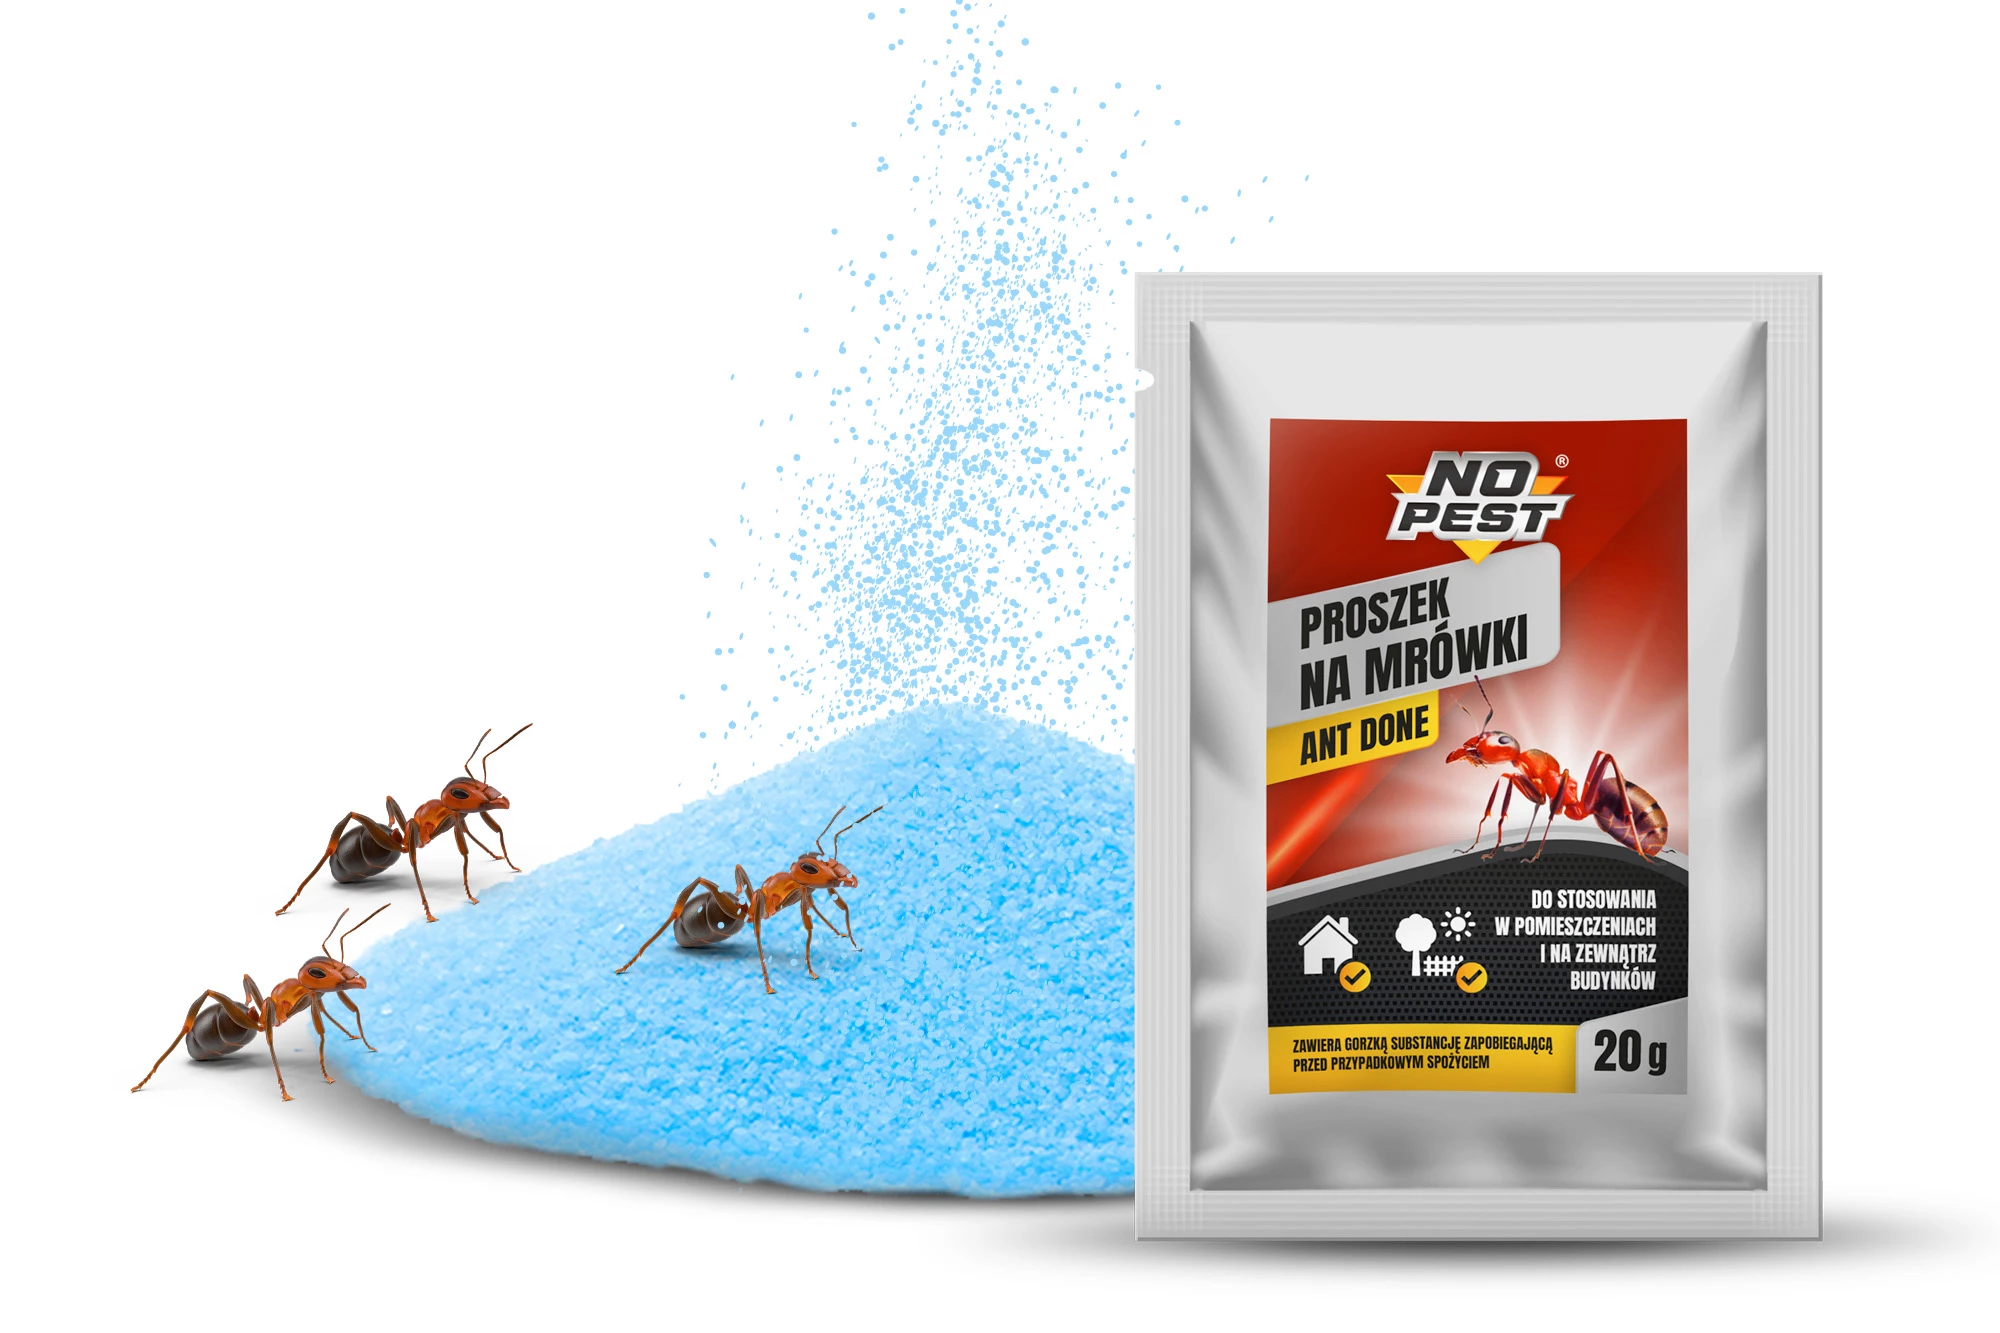 proszek na mrówki, proszek na mrówki bros, bros na mrówki, no pest na mrówki, proszek na mrówki no pest, proszek na mrówki no pest cena, trutka na mrówki, proszek do zwalczania mrówek, proszek zwalczający mrówki, preparat na mrówki, środek na mrówki